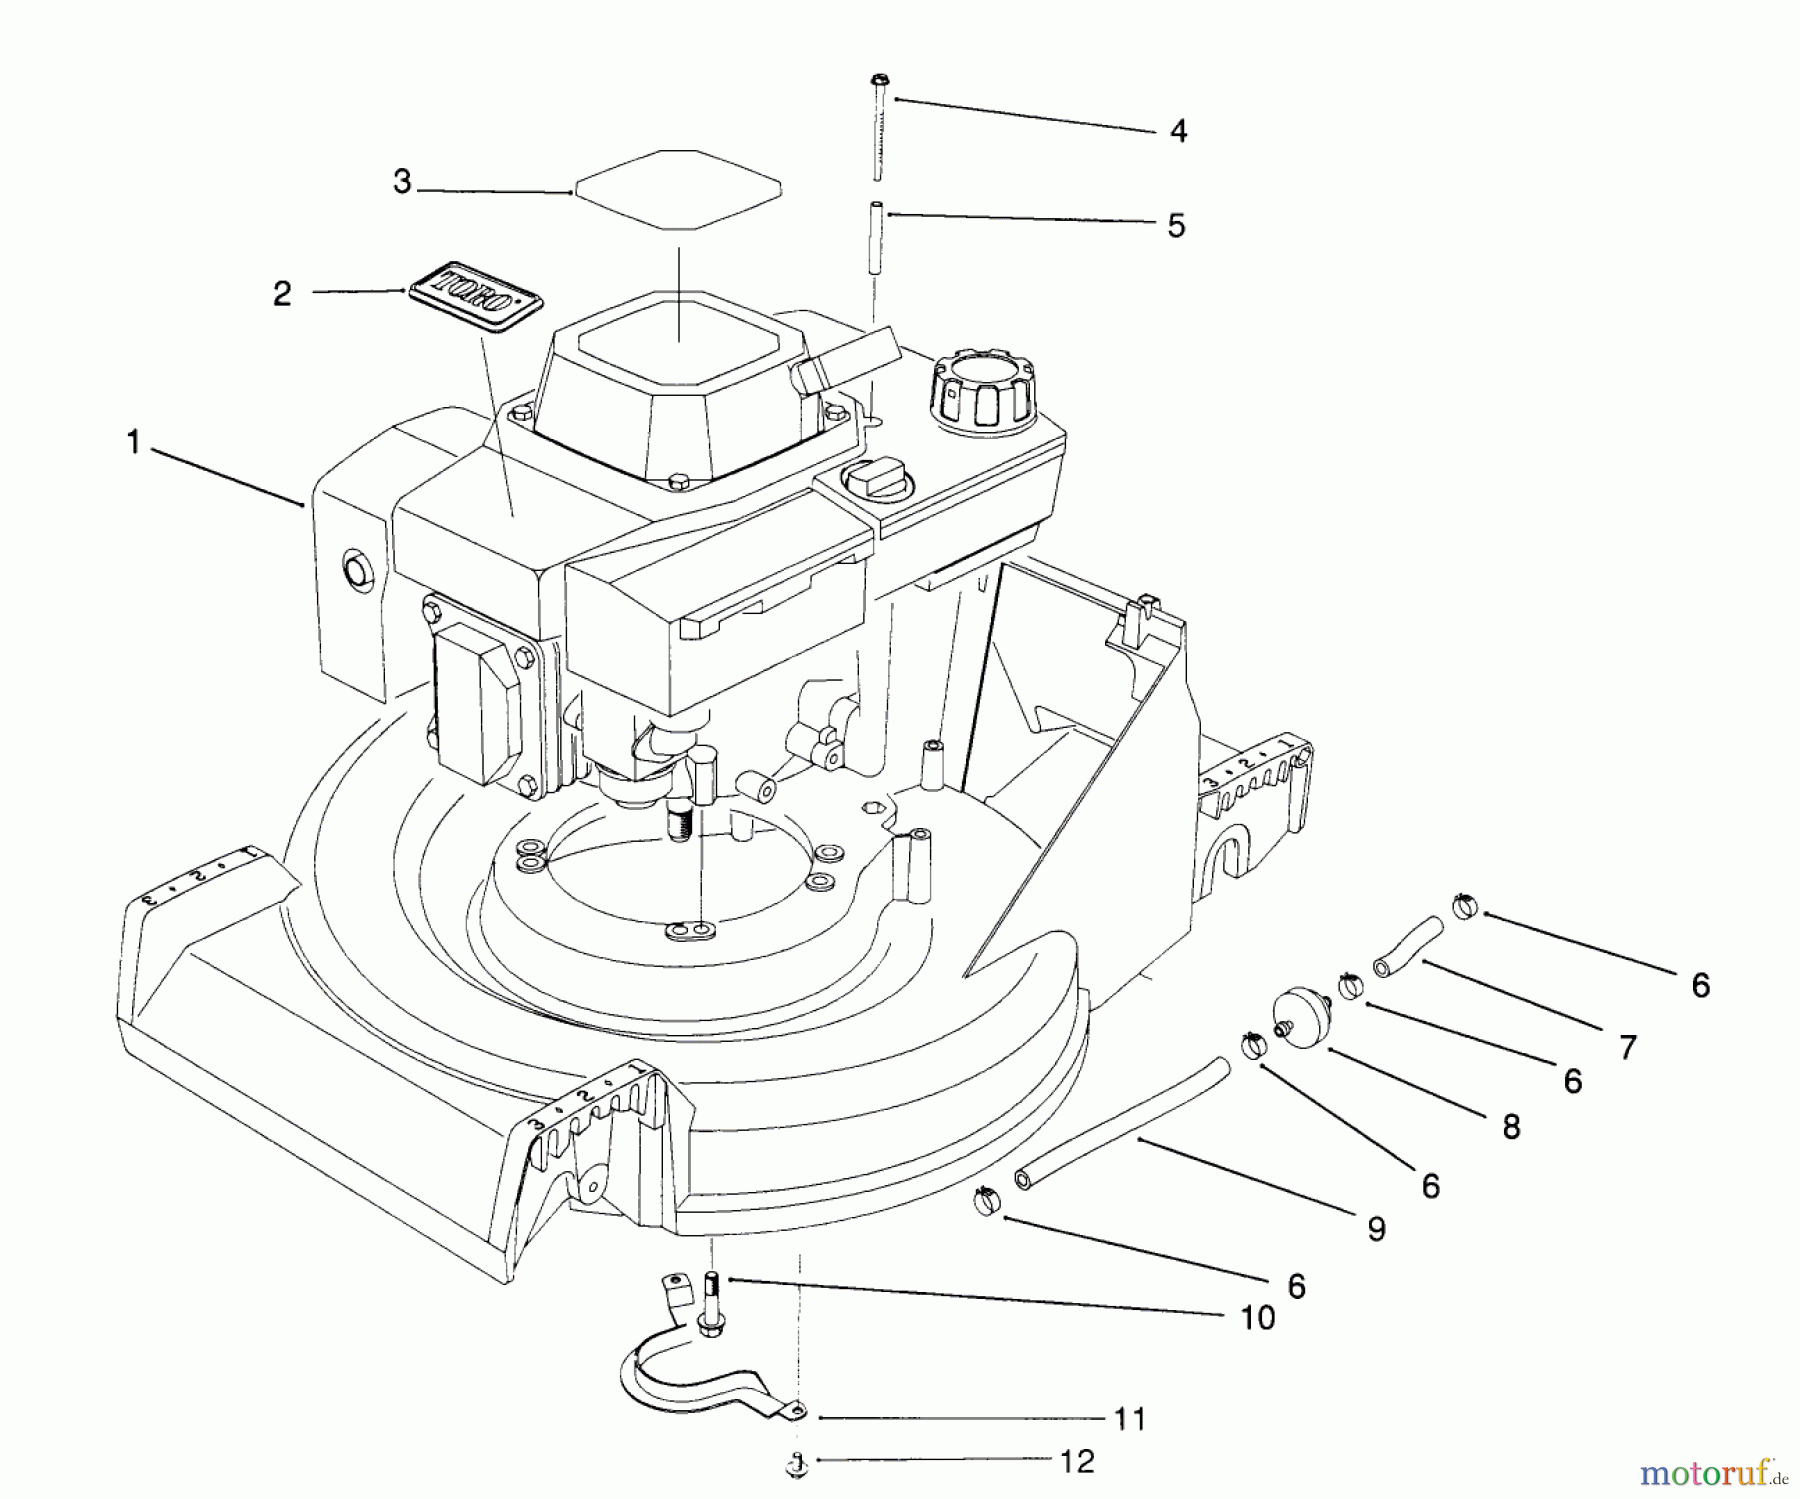  Toro Neu Mowers, Walk-Behind Seite 2 26623 - Toro Lawnmower, 1991 (0000001-0999999) ENGINE ASSEMBLY